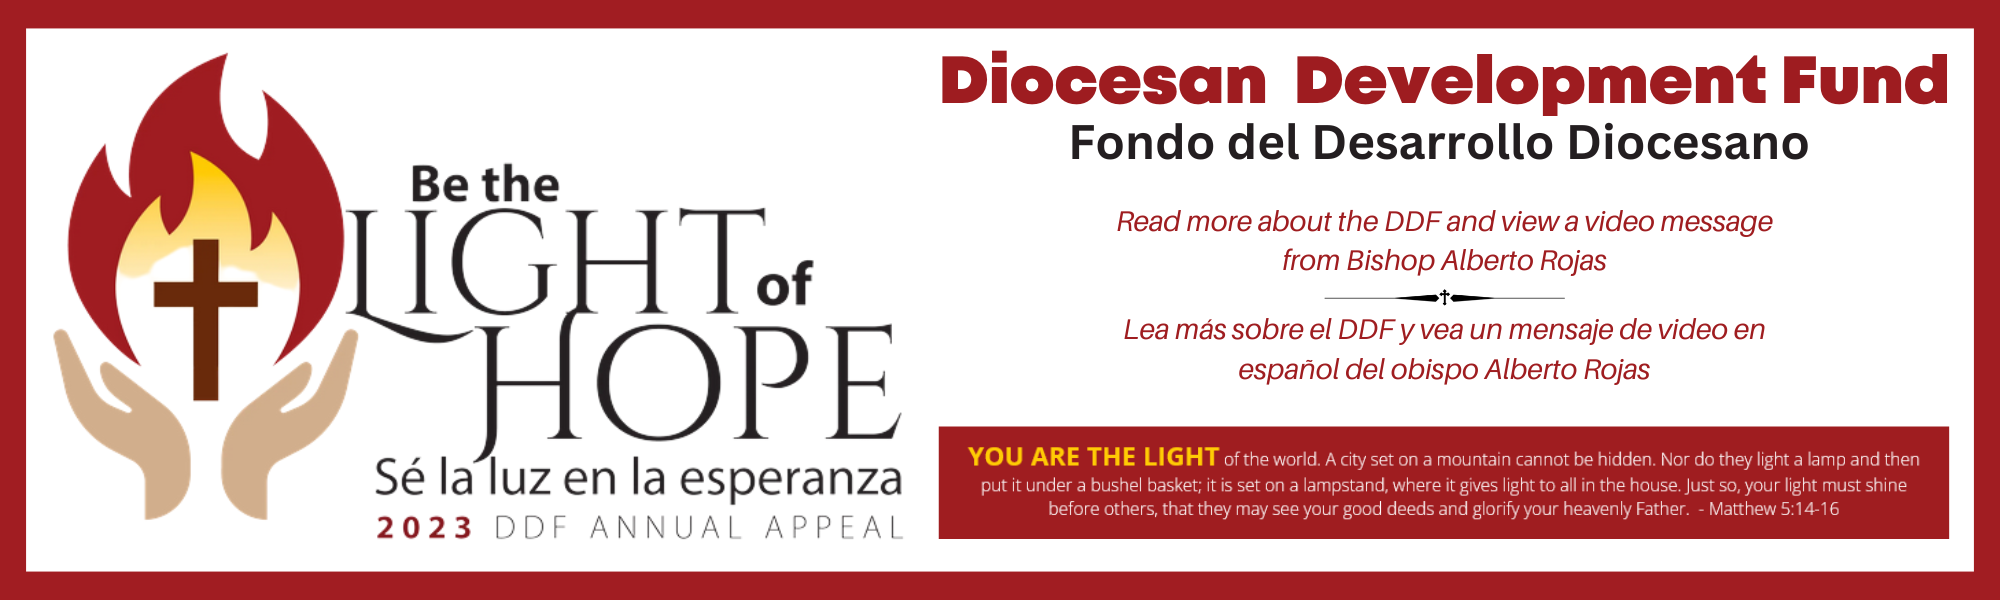 DDF Annual Appeal